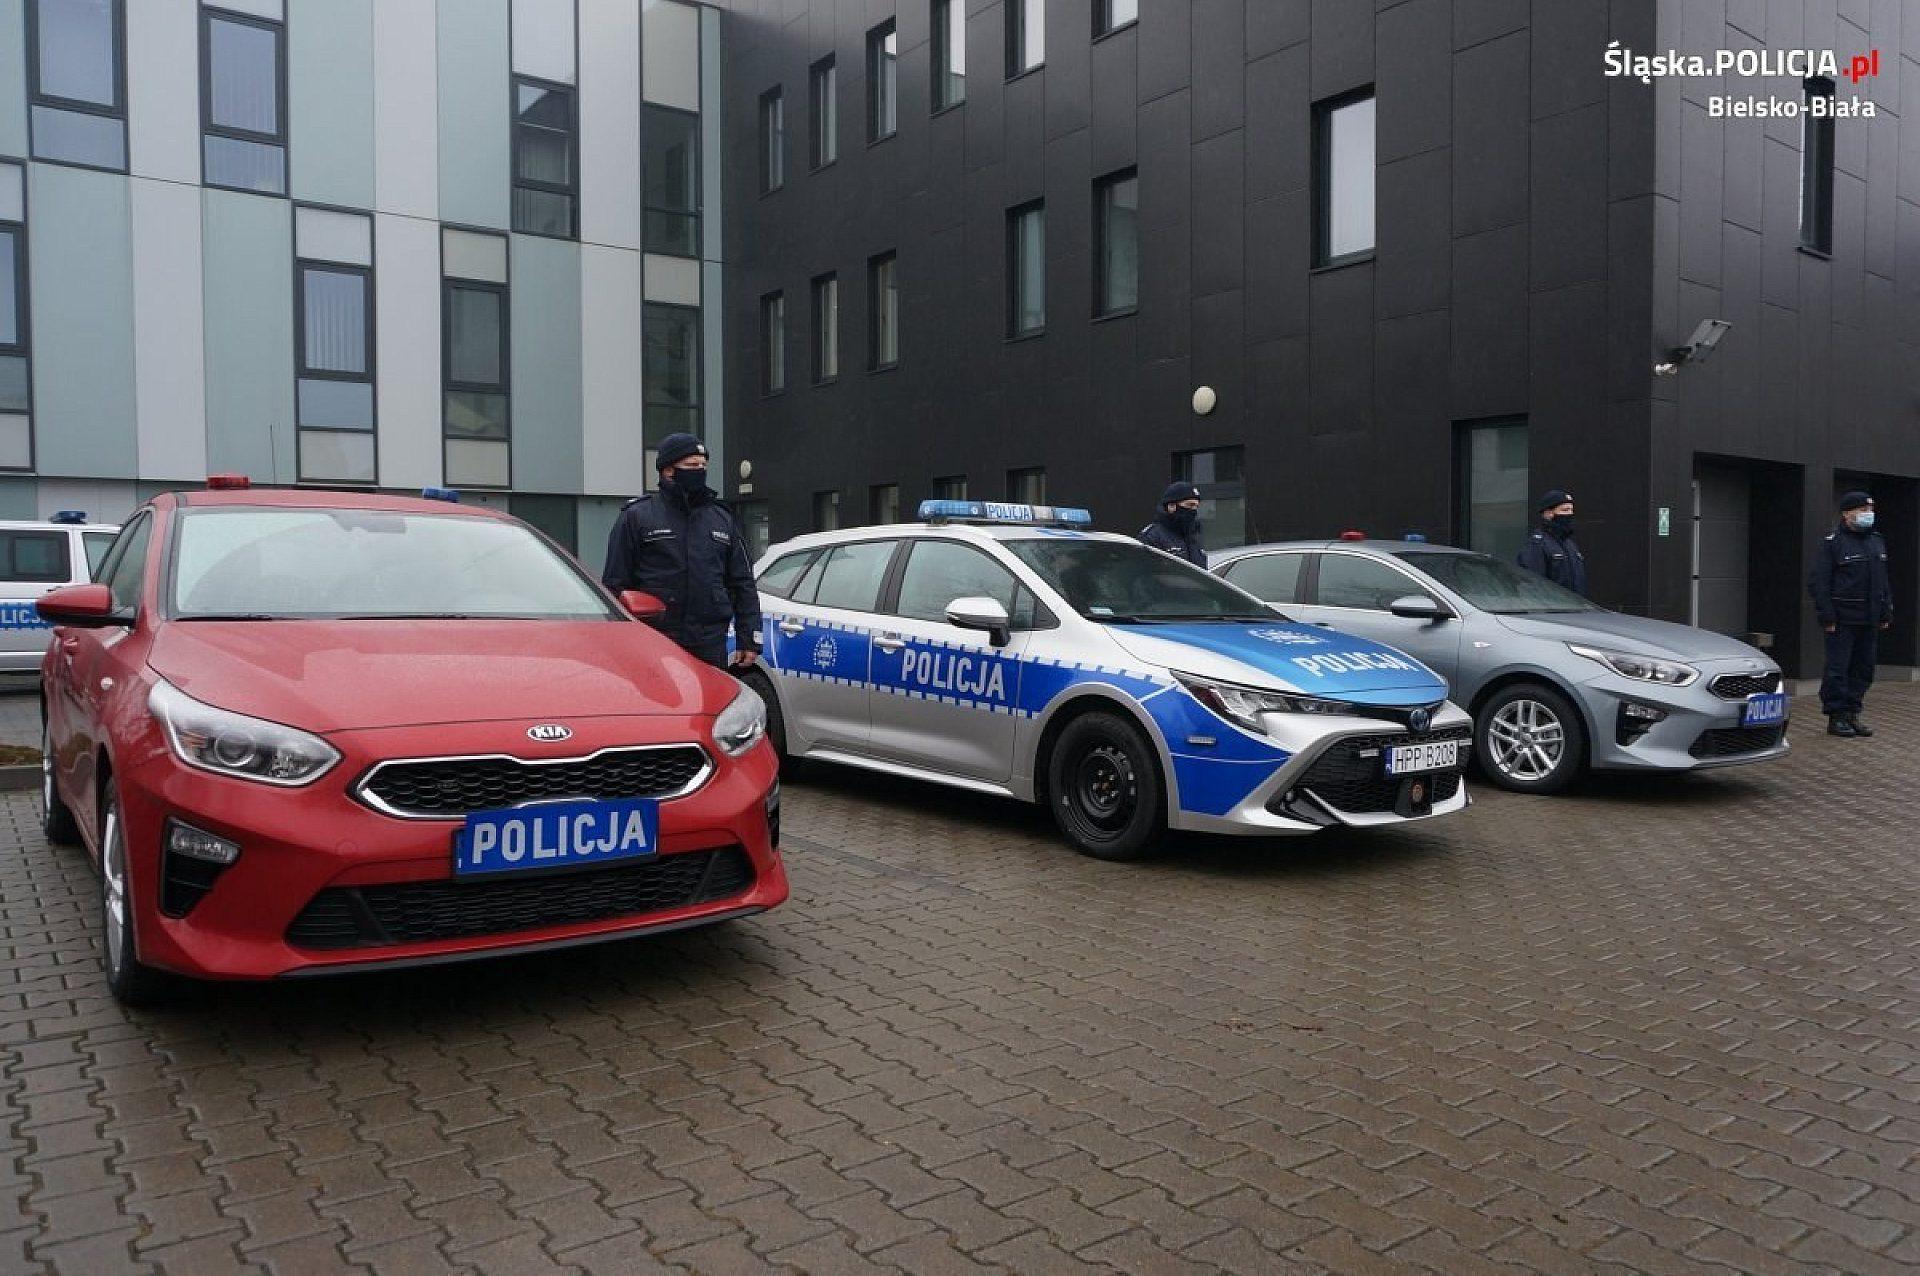 Nowe samochody śląskiej policji, kupione w 2021 r.